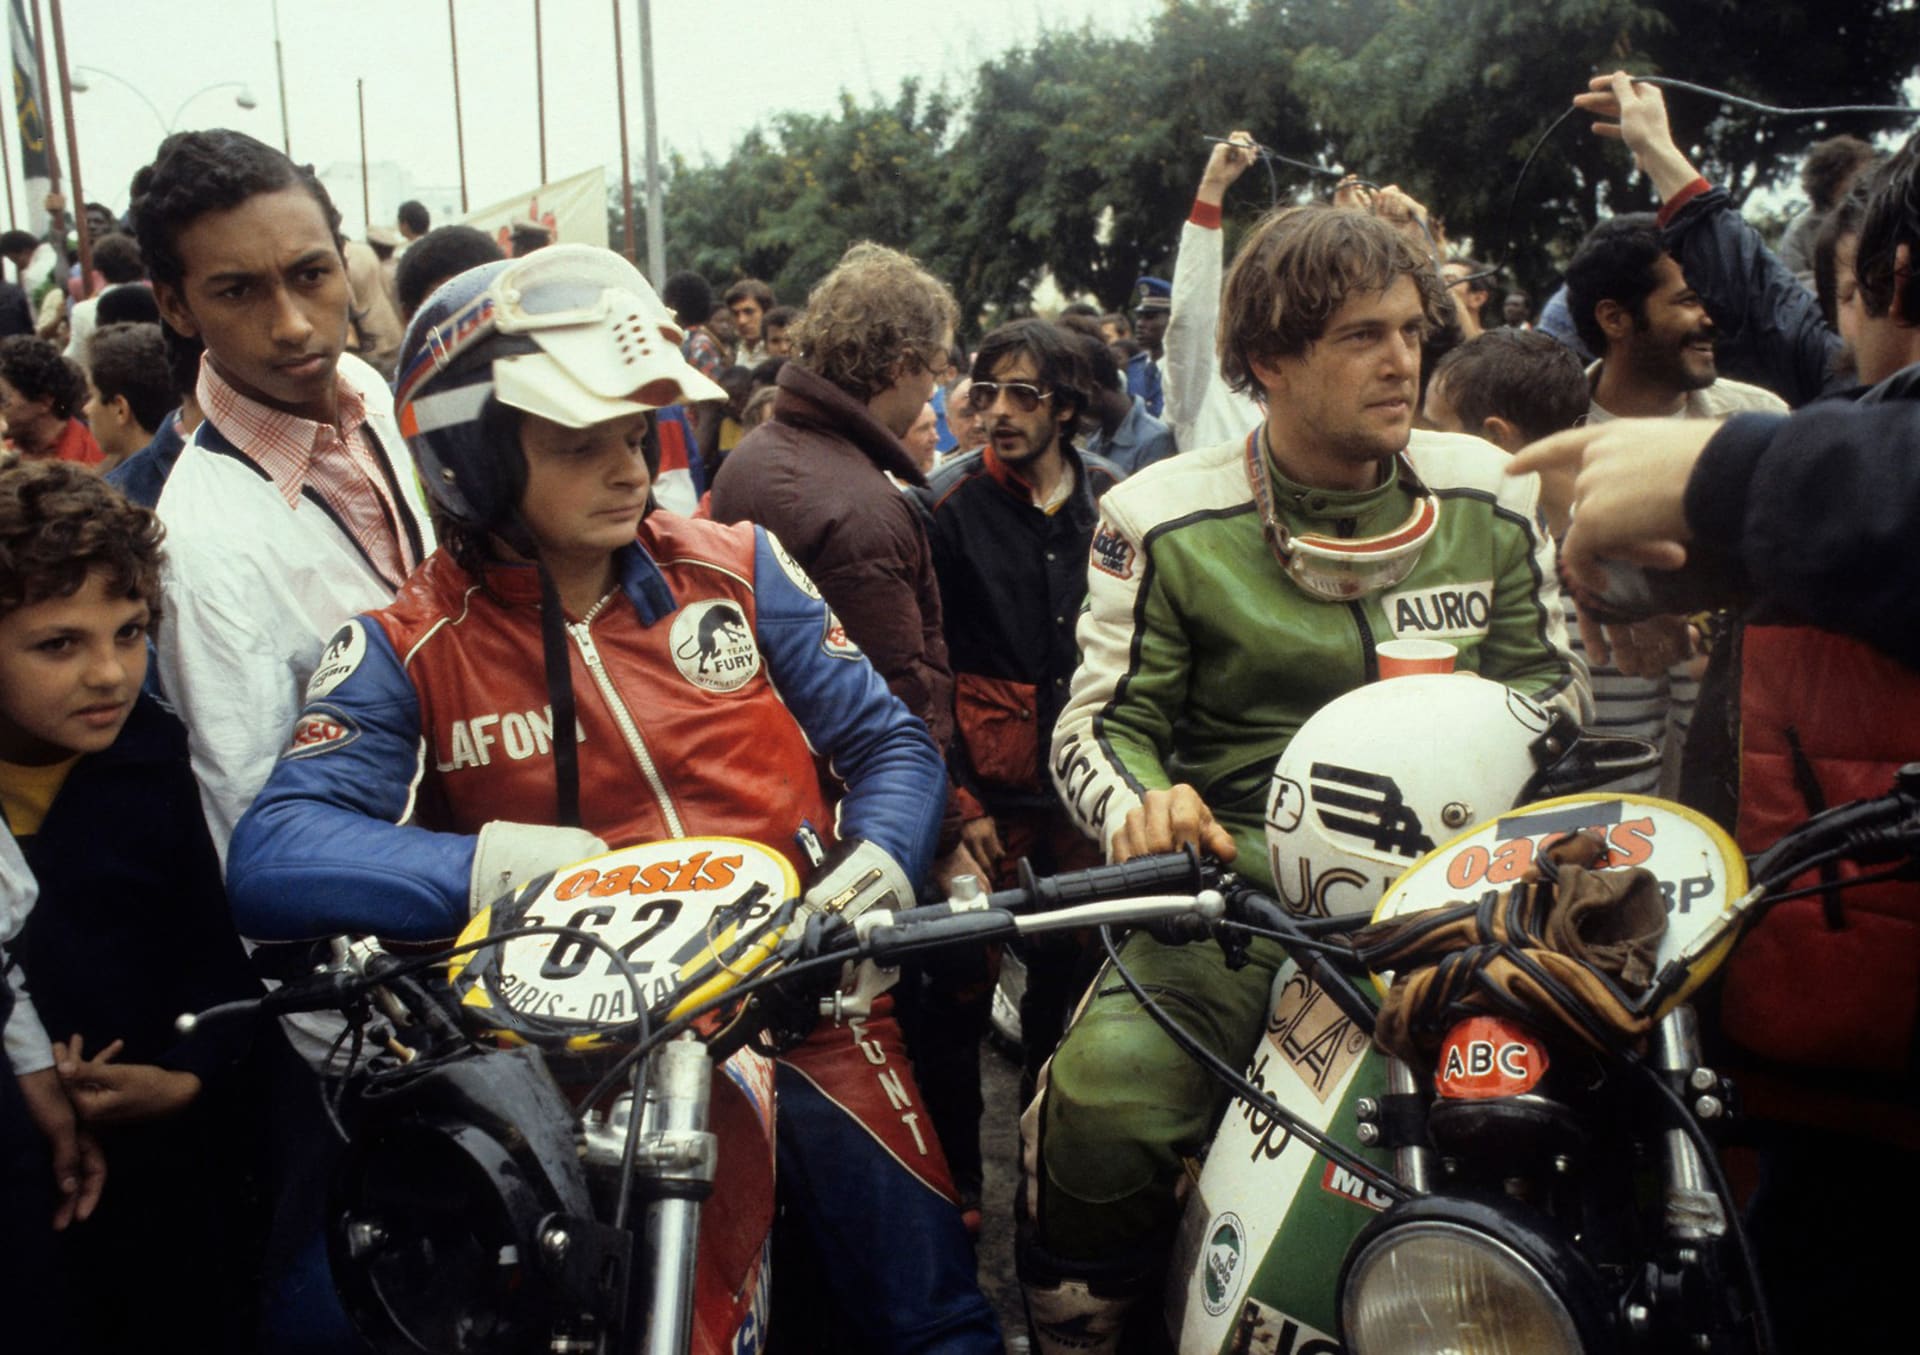 Hubert Auriol se v roce 1979 zúčastnil už historicky prvního ročníku nejslavnějšího dálkového závodu. Později se stal prvním a zatím předposledním jezdcem, který vyhrál kategorie motocyklů i automobilů.